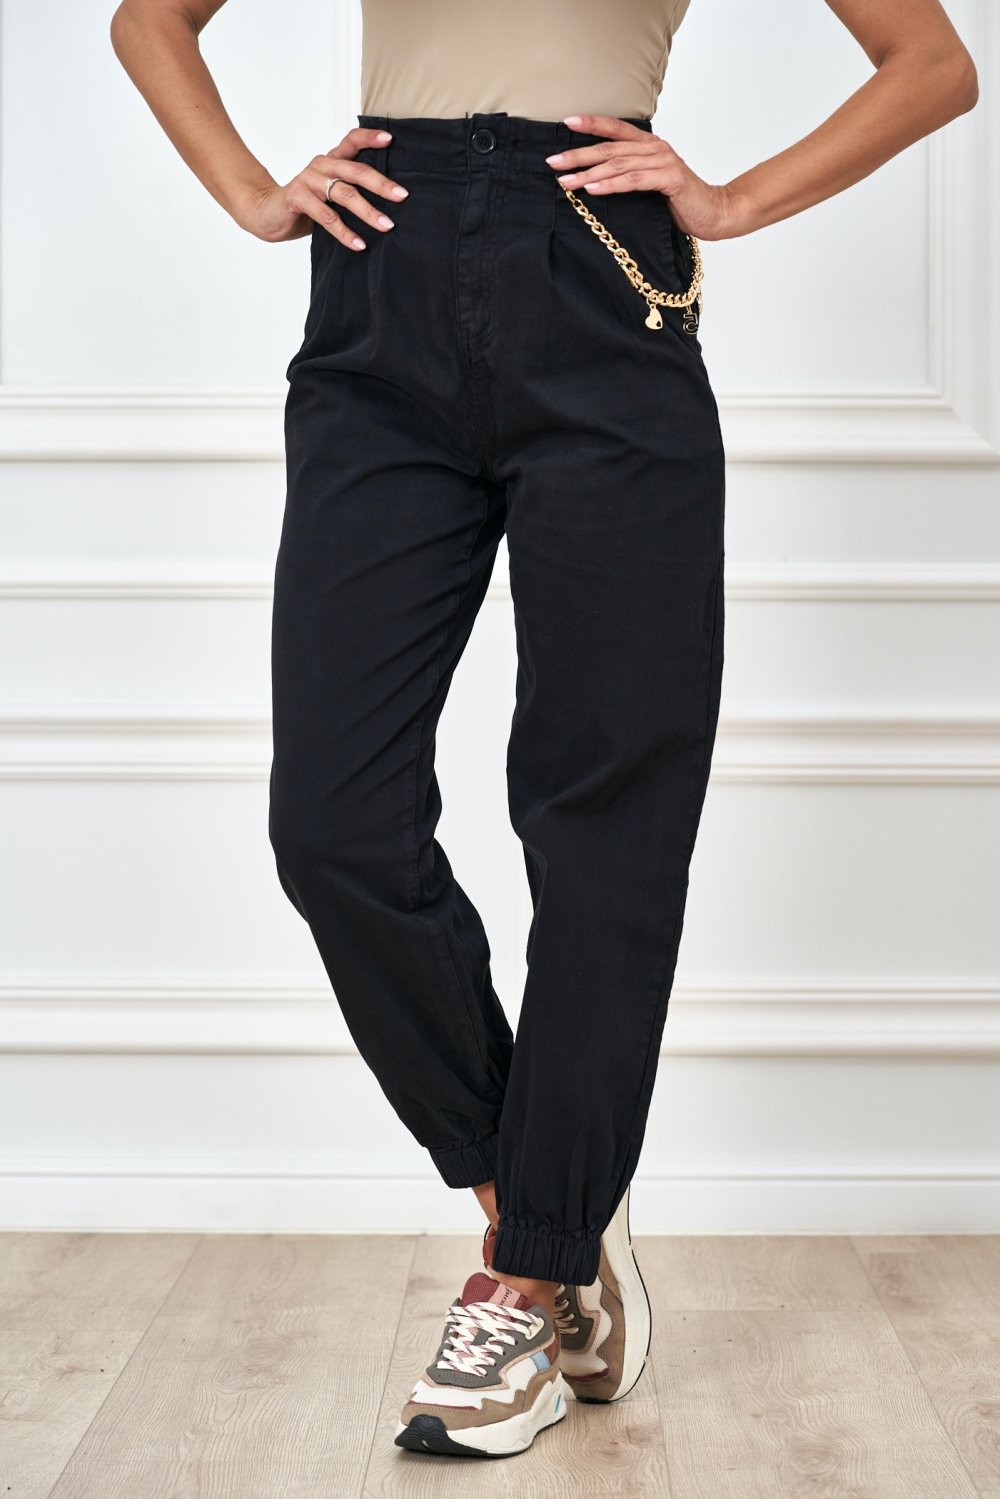 Trendy nohavice ozdobené s retiazkou čierne.